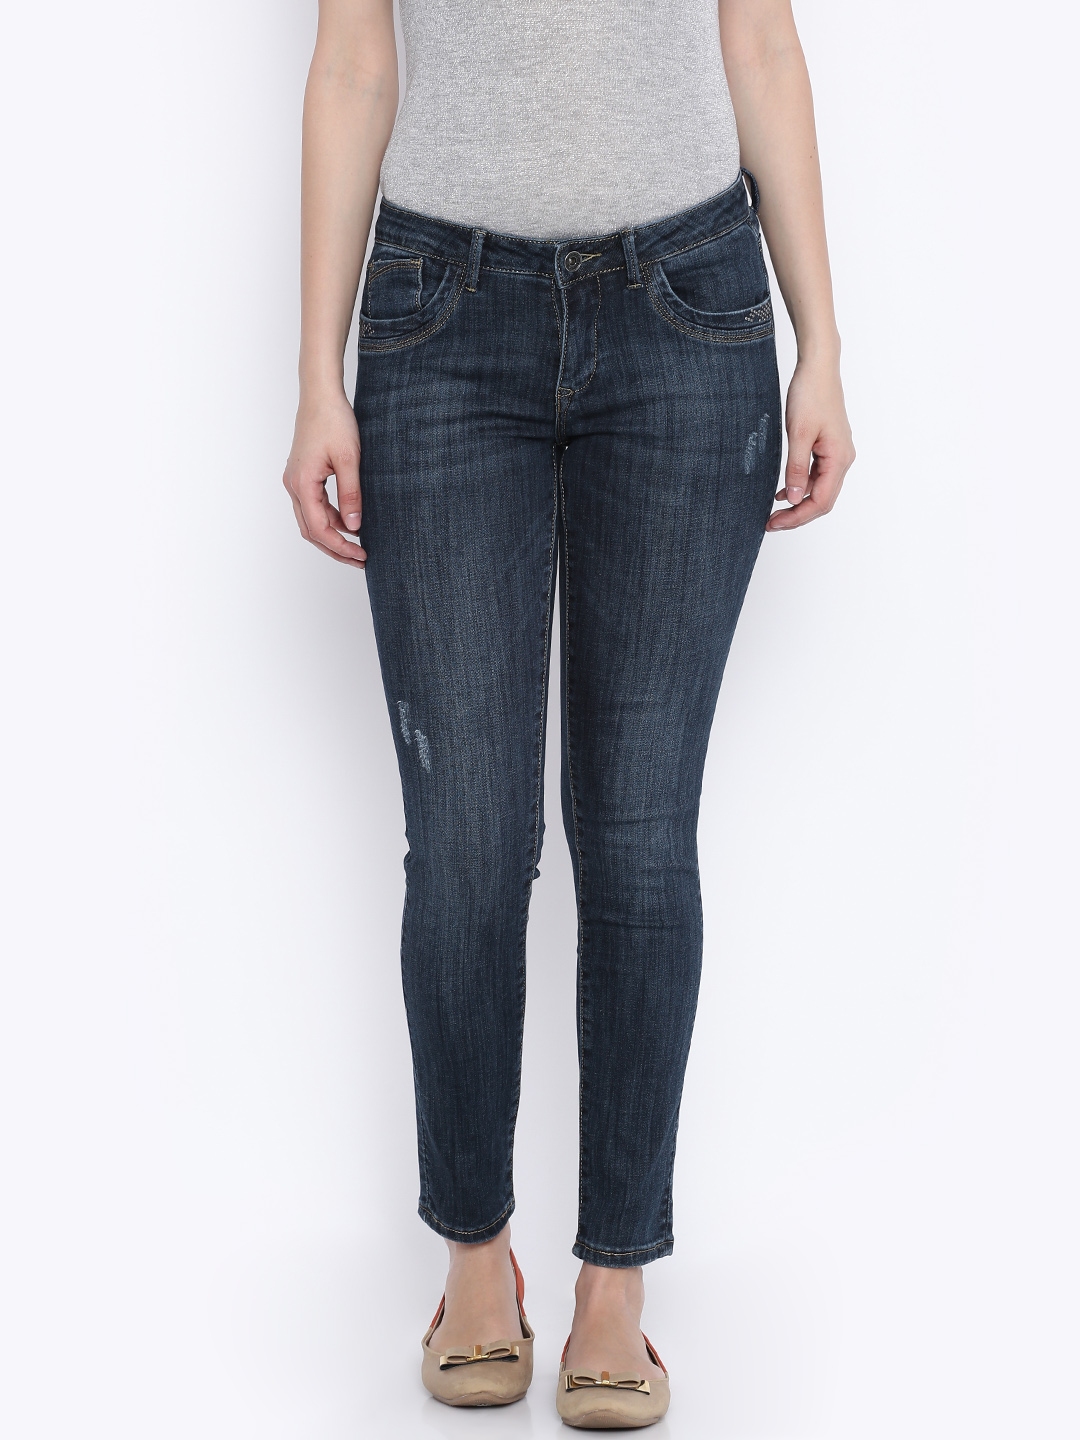 Buy Deal Jeans Women Blue Skinny Fit Jeans - Jeans for Women 1769903 ...